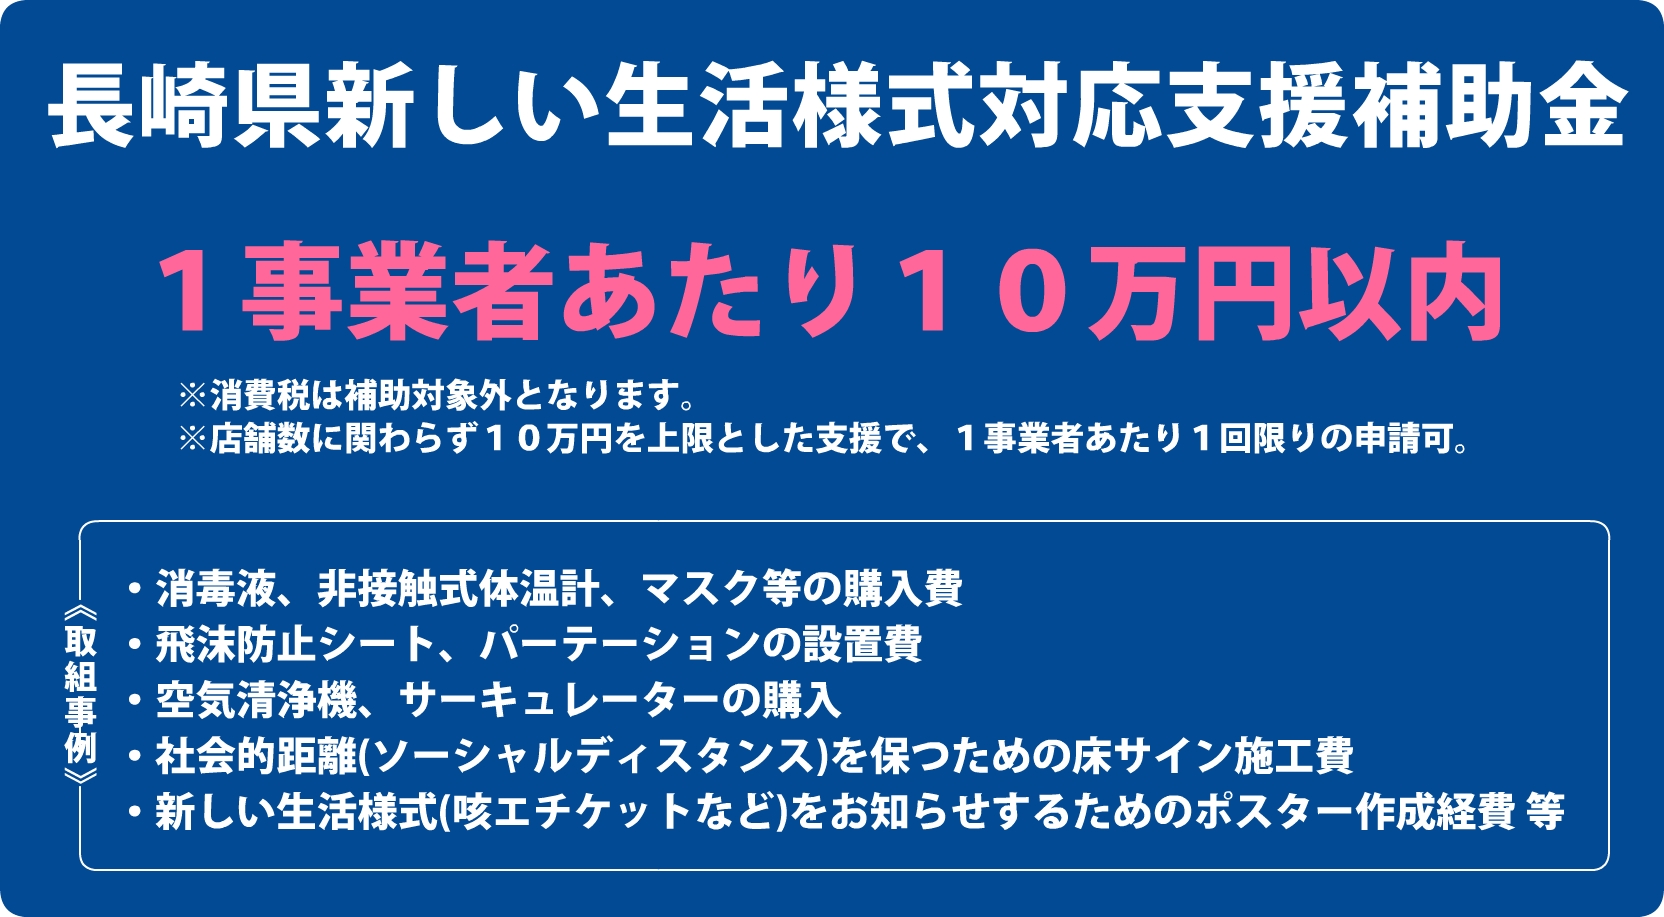 長崎県新しい生活様式対応支援補助金